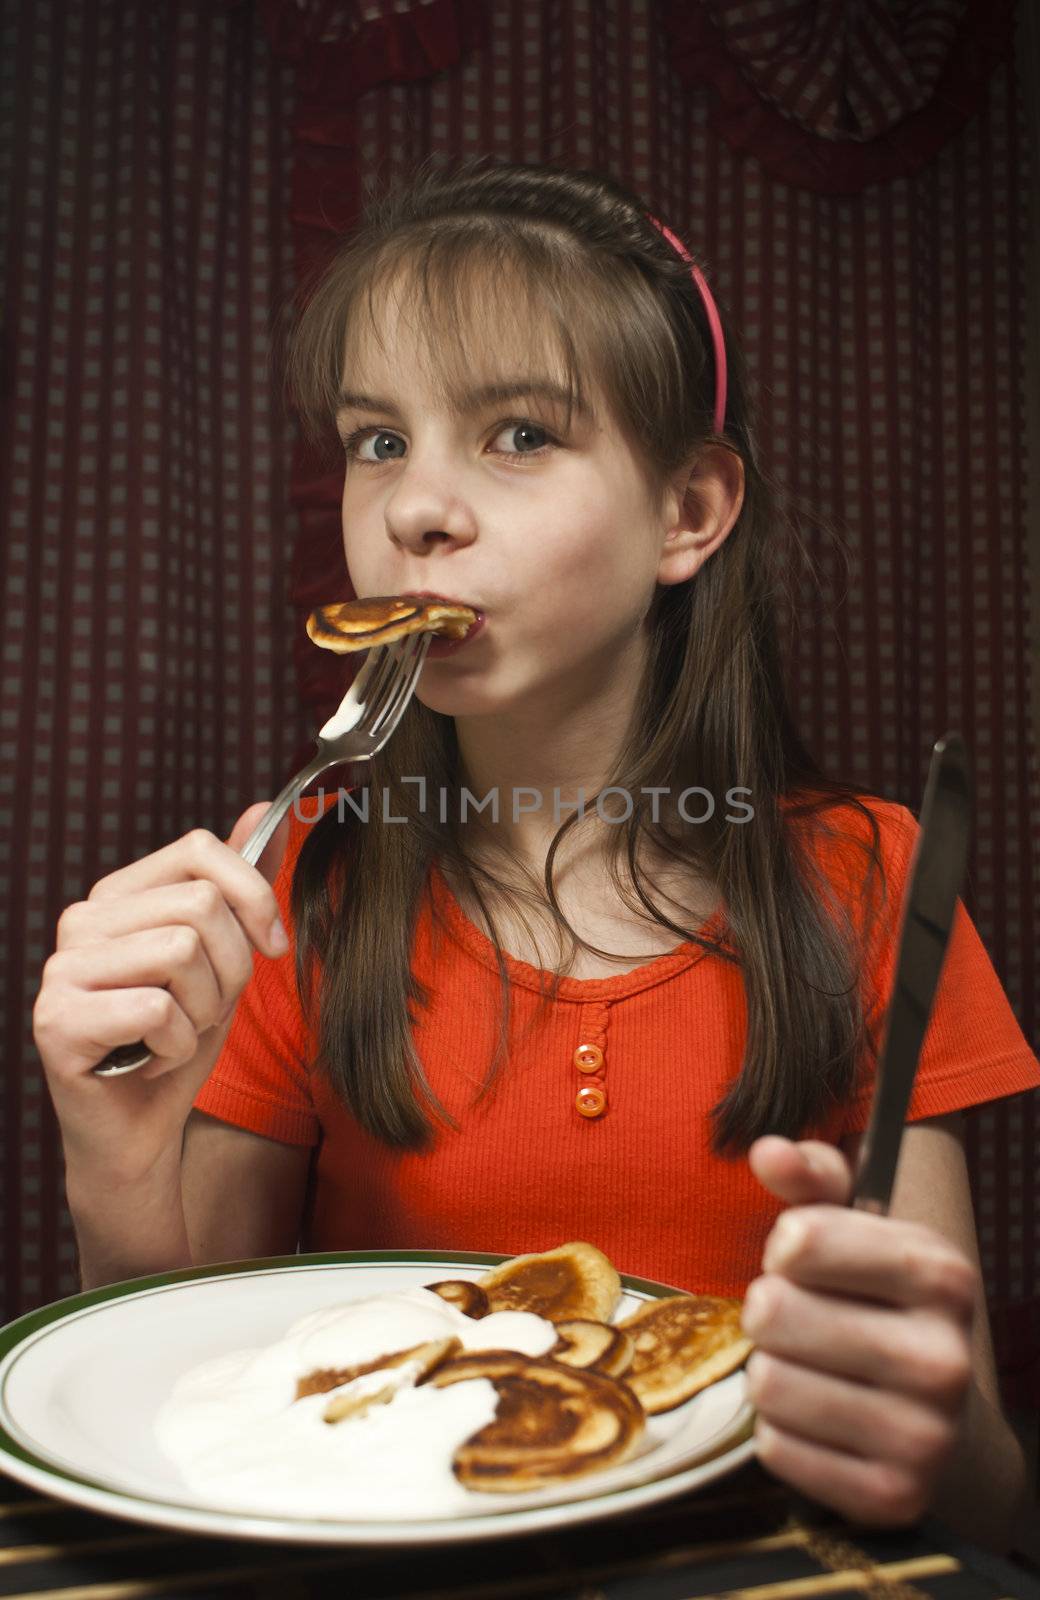 Teen girl eats a pancake from a dish